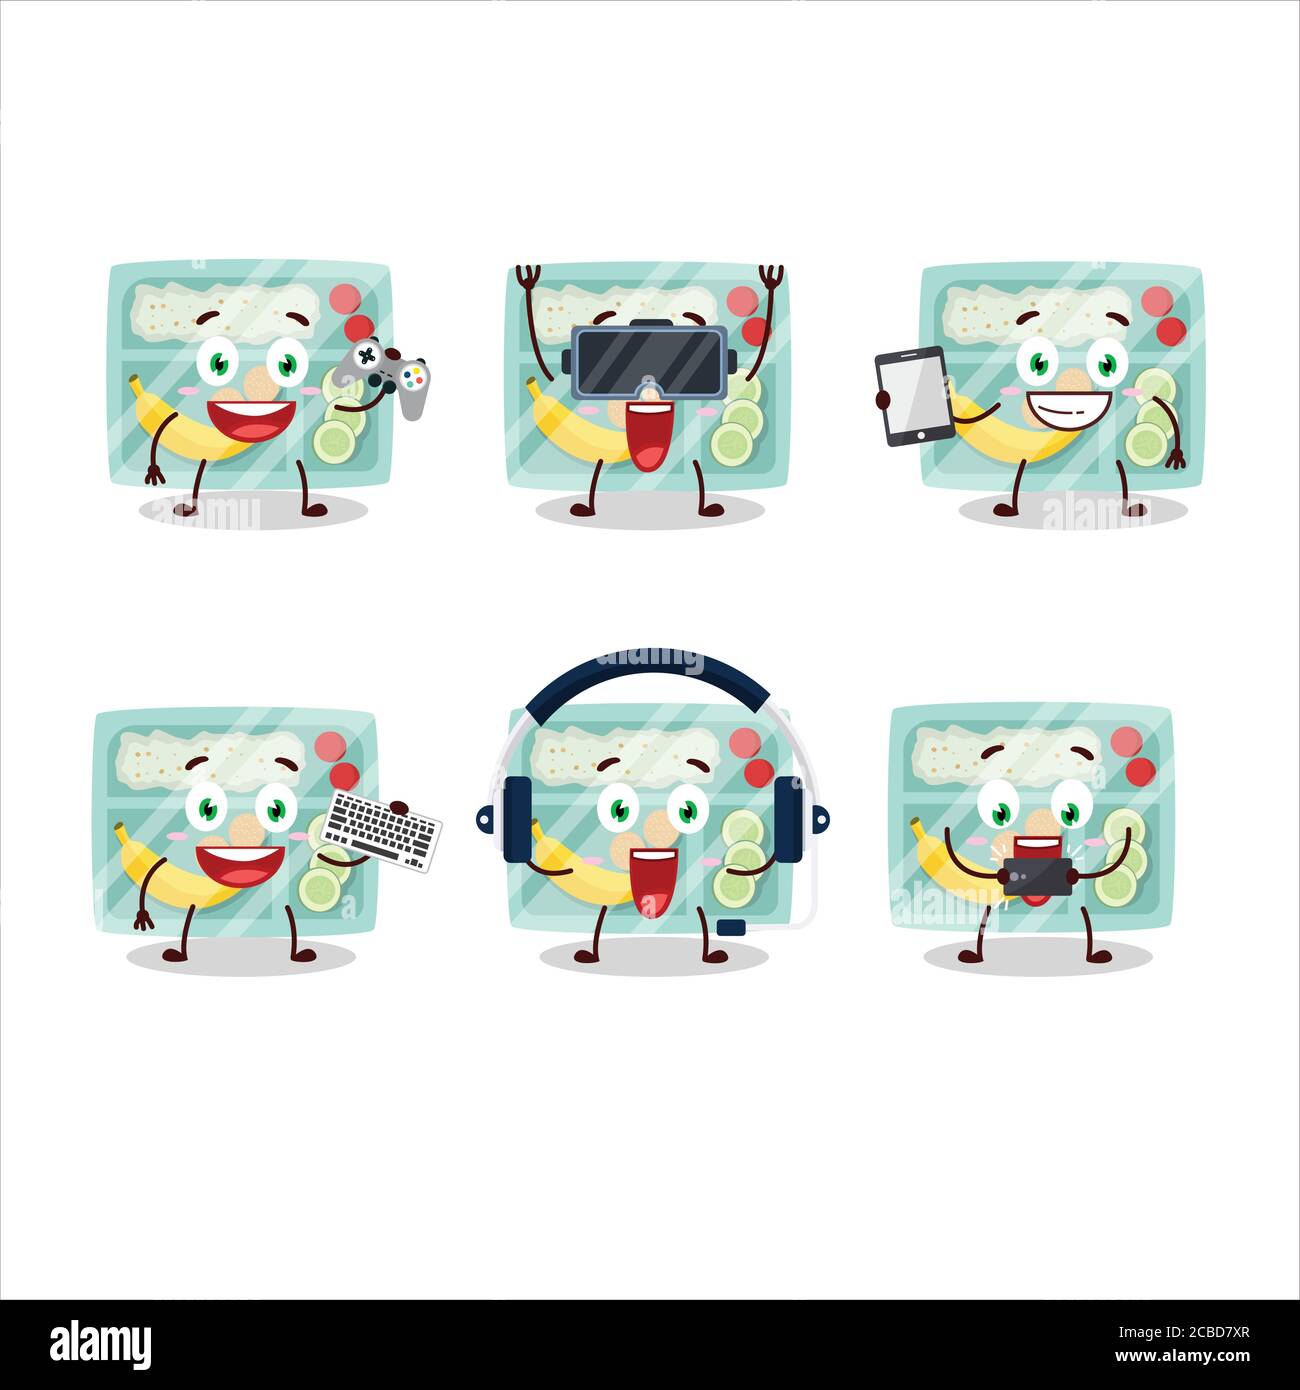 Le personnage de dessin animé de la boîte à lunch joue à des jeux avec divers mignon émoticônes Illustration de Vecteur